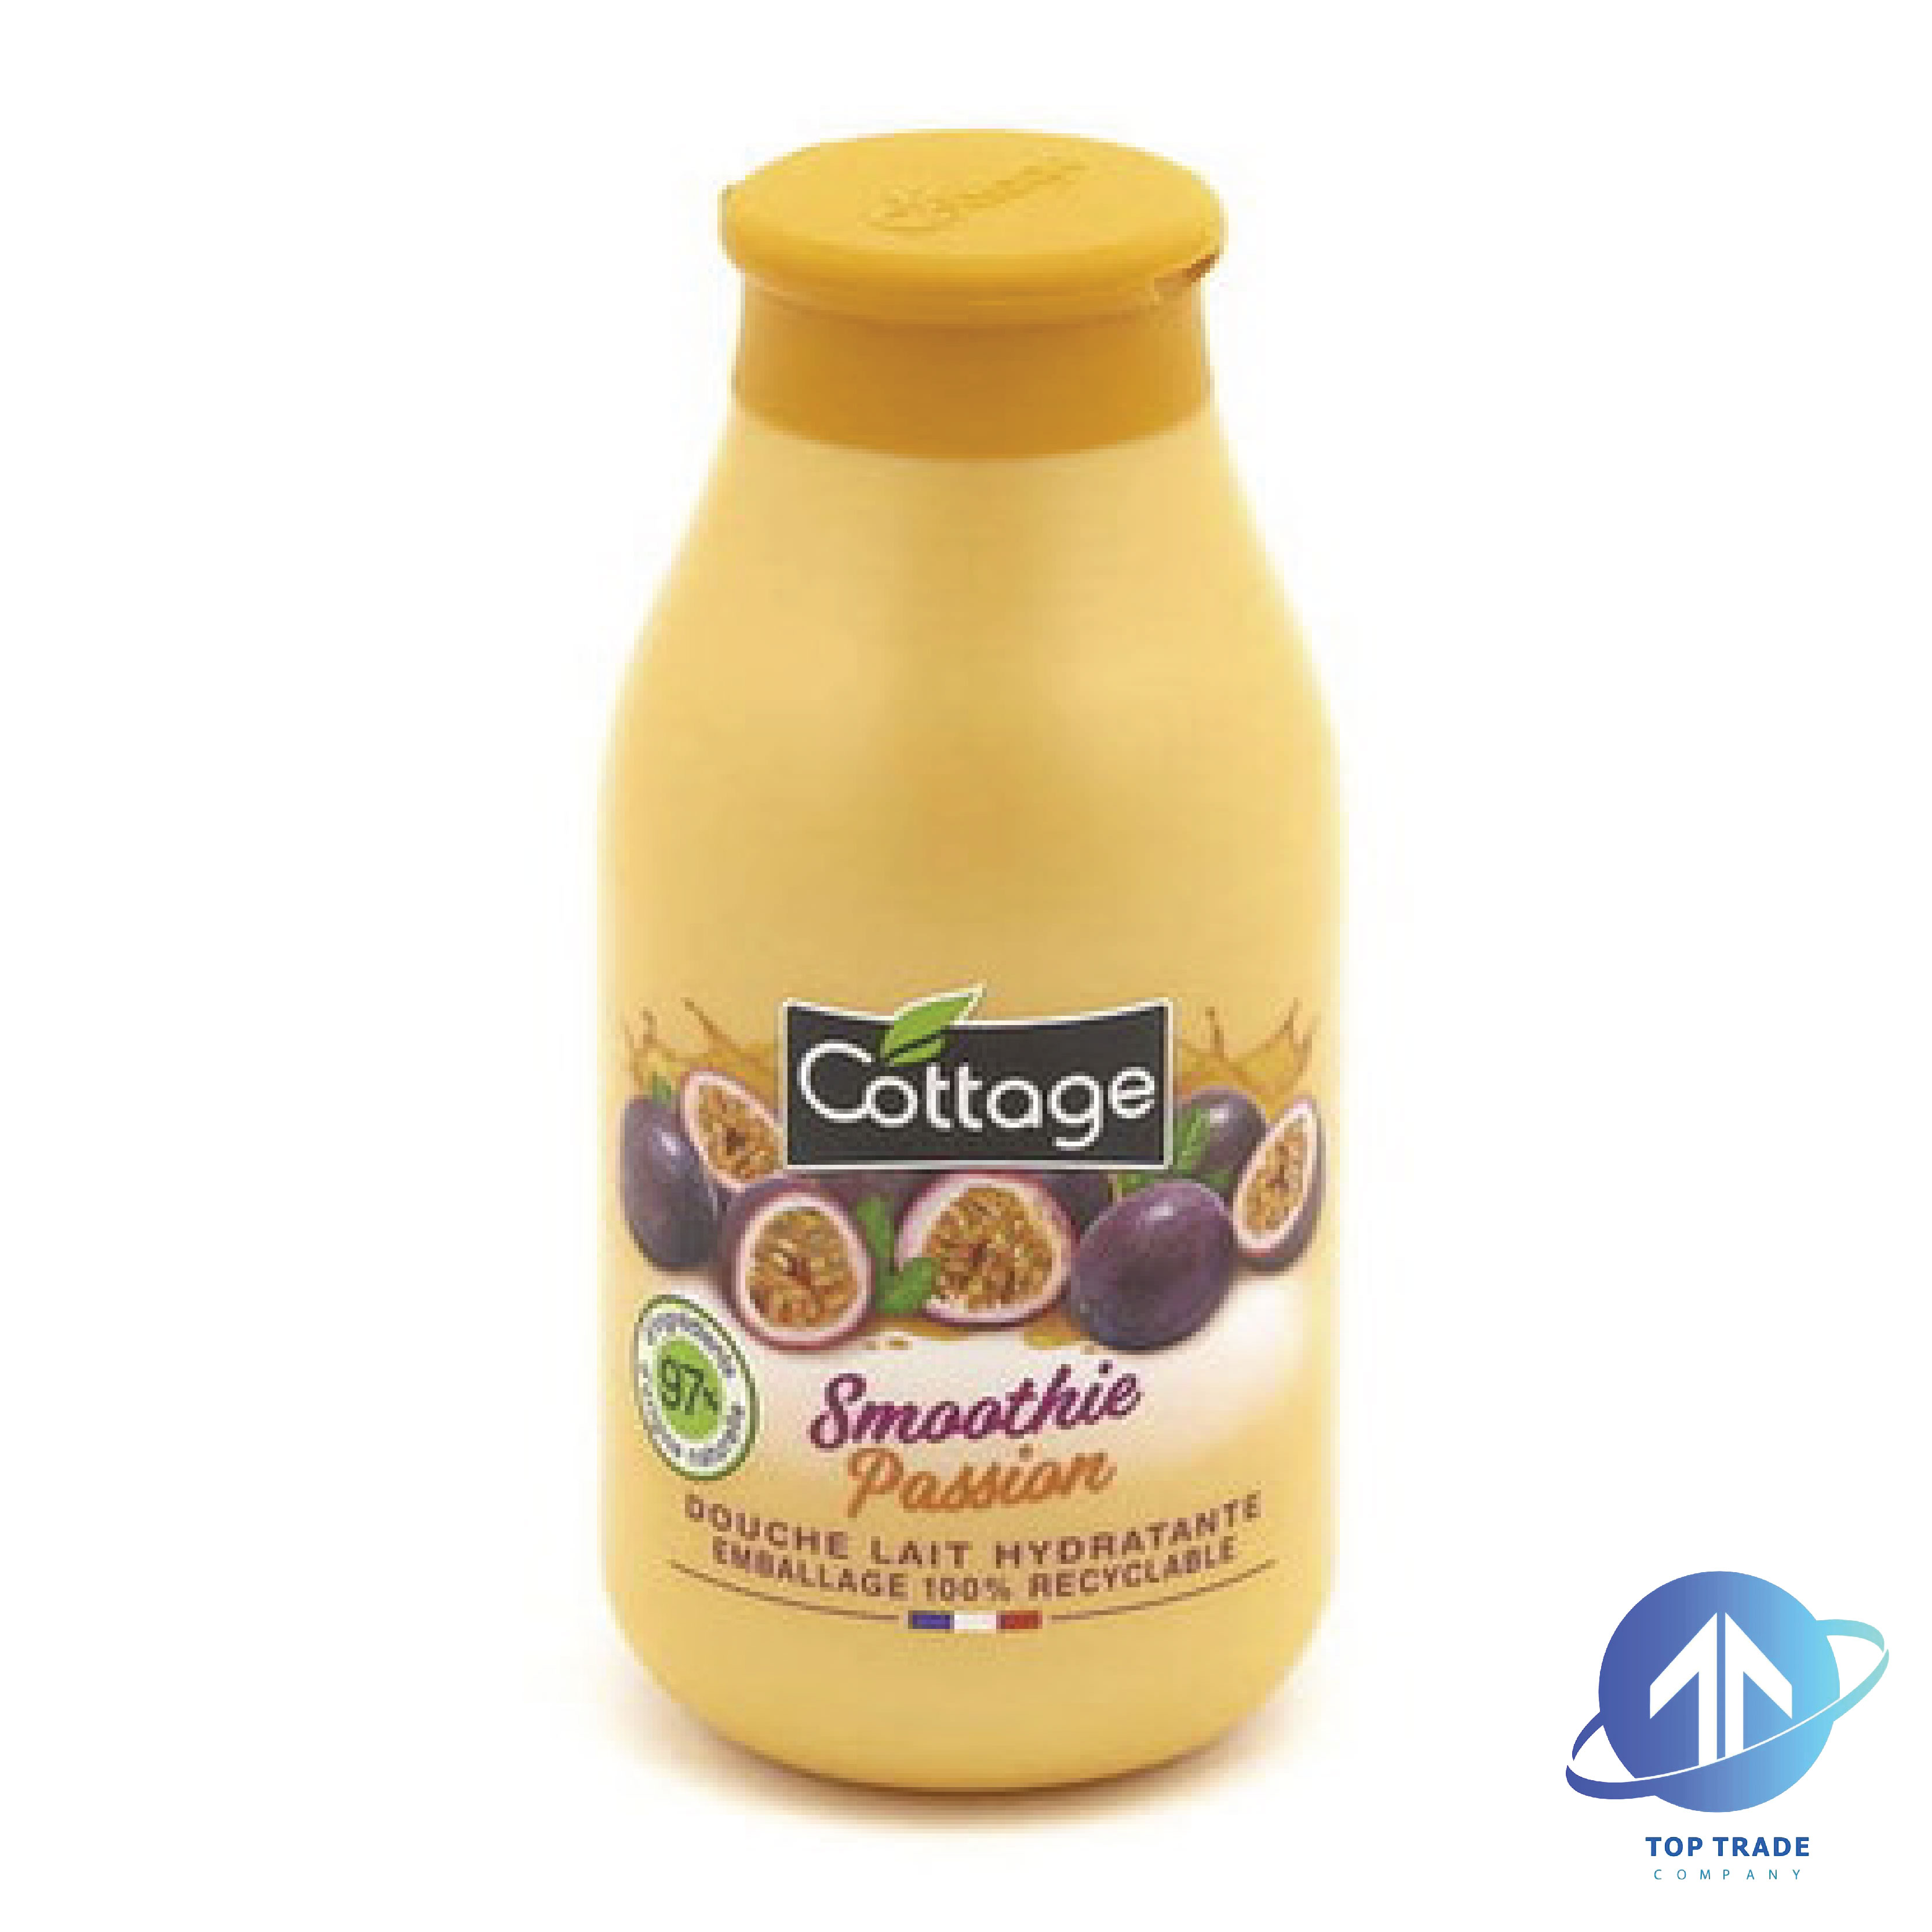 Cottage shower milk Smoothie Passion Arabic label 250ml